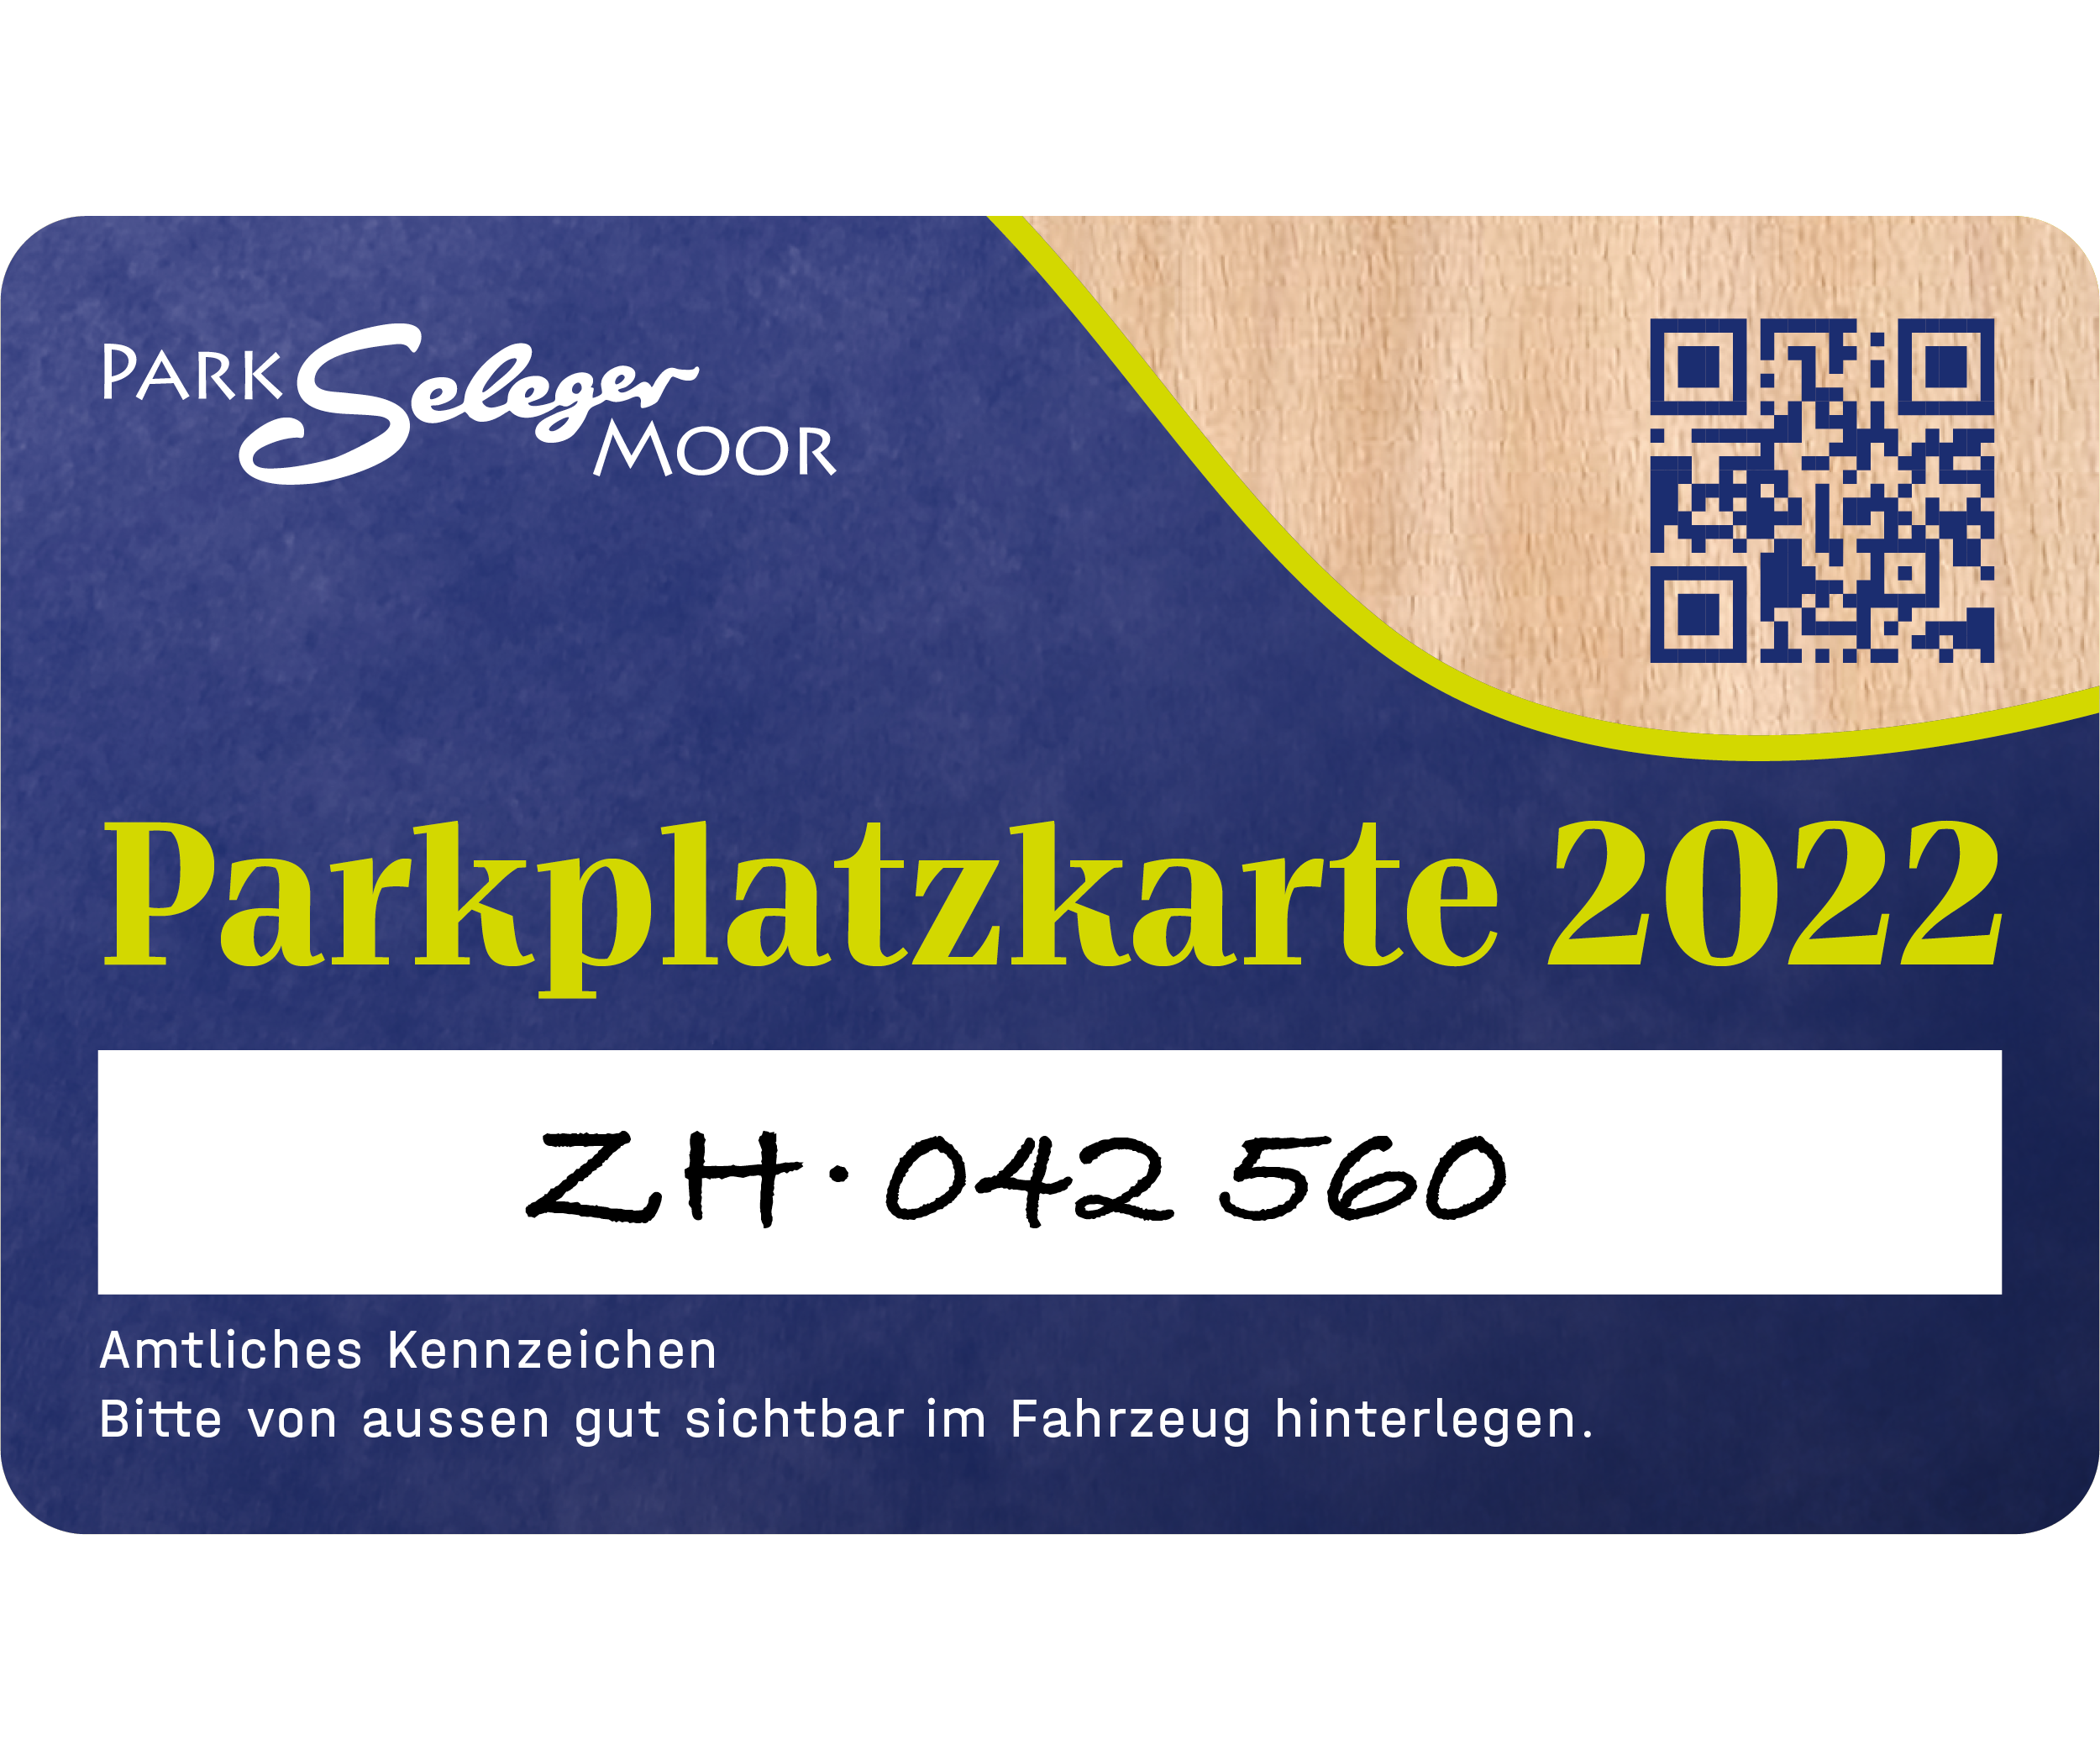 Parkplatzkarte 2022 (CHF 12) Gültig bis 31.12.2022